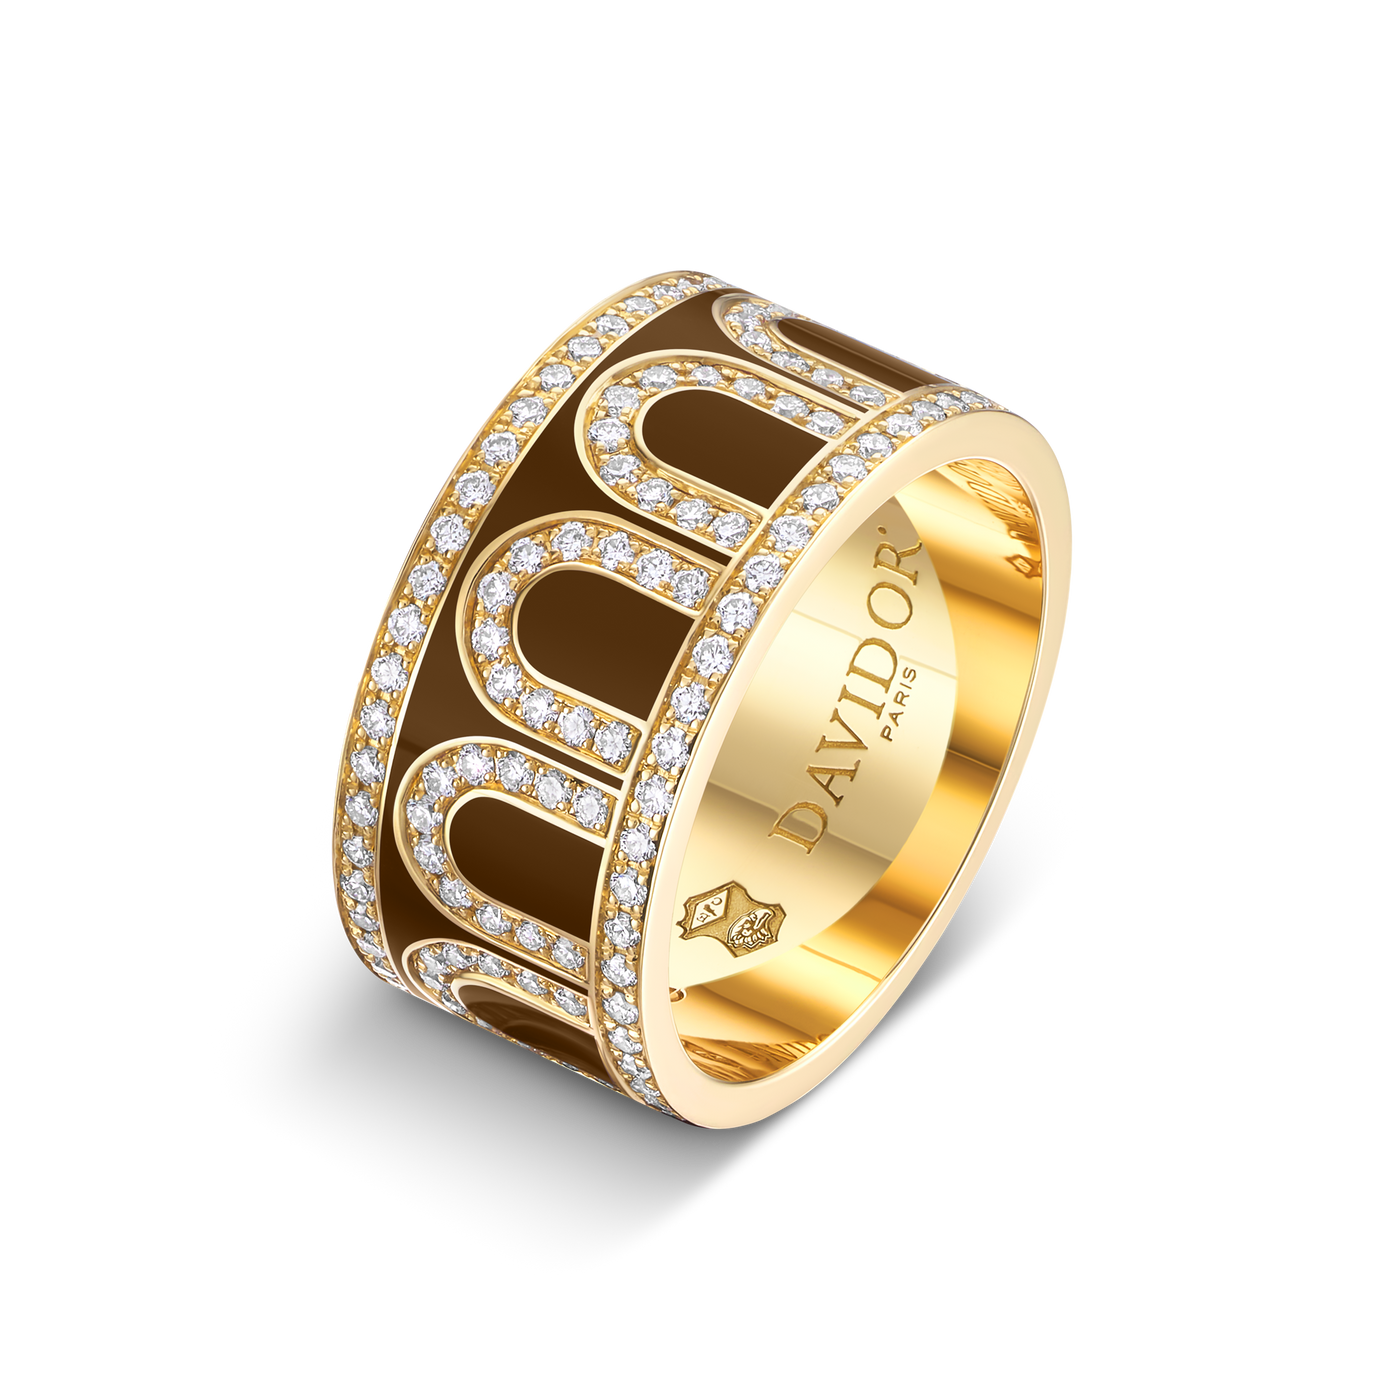 L'Arc de DAVIDOR Ring GM Palais Diamonds, 18k Yellow Gold with Cognac Lacquered Ceramic - DAVIDOR